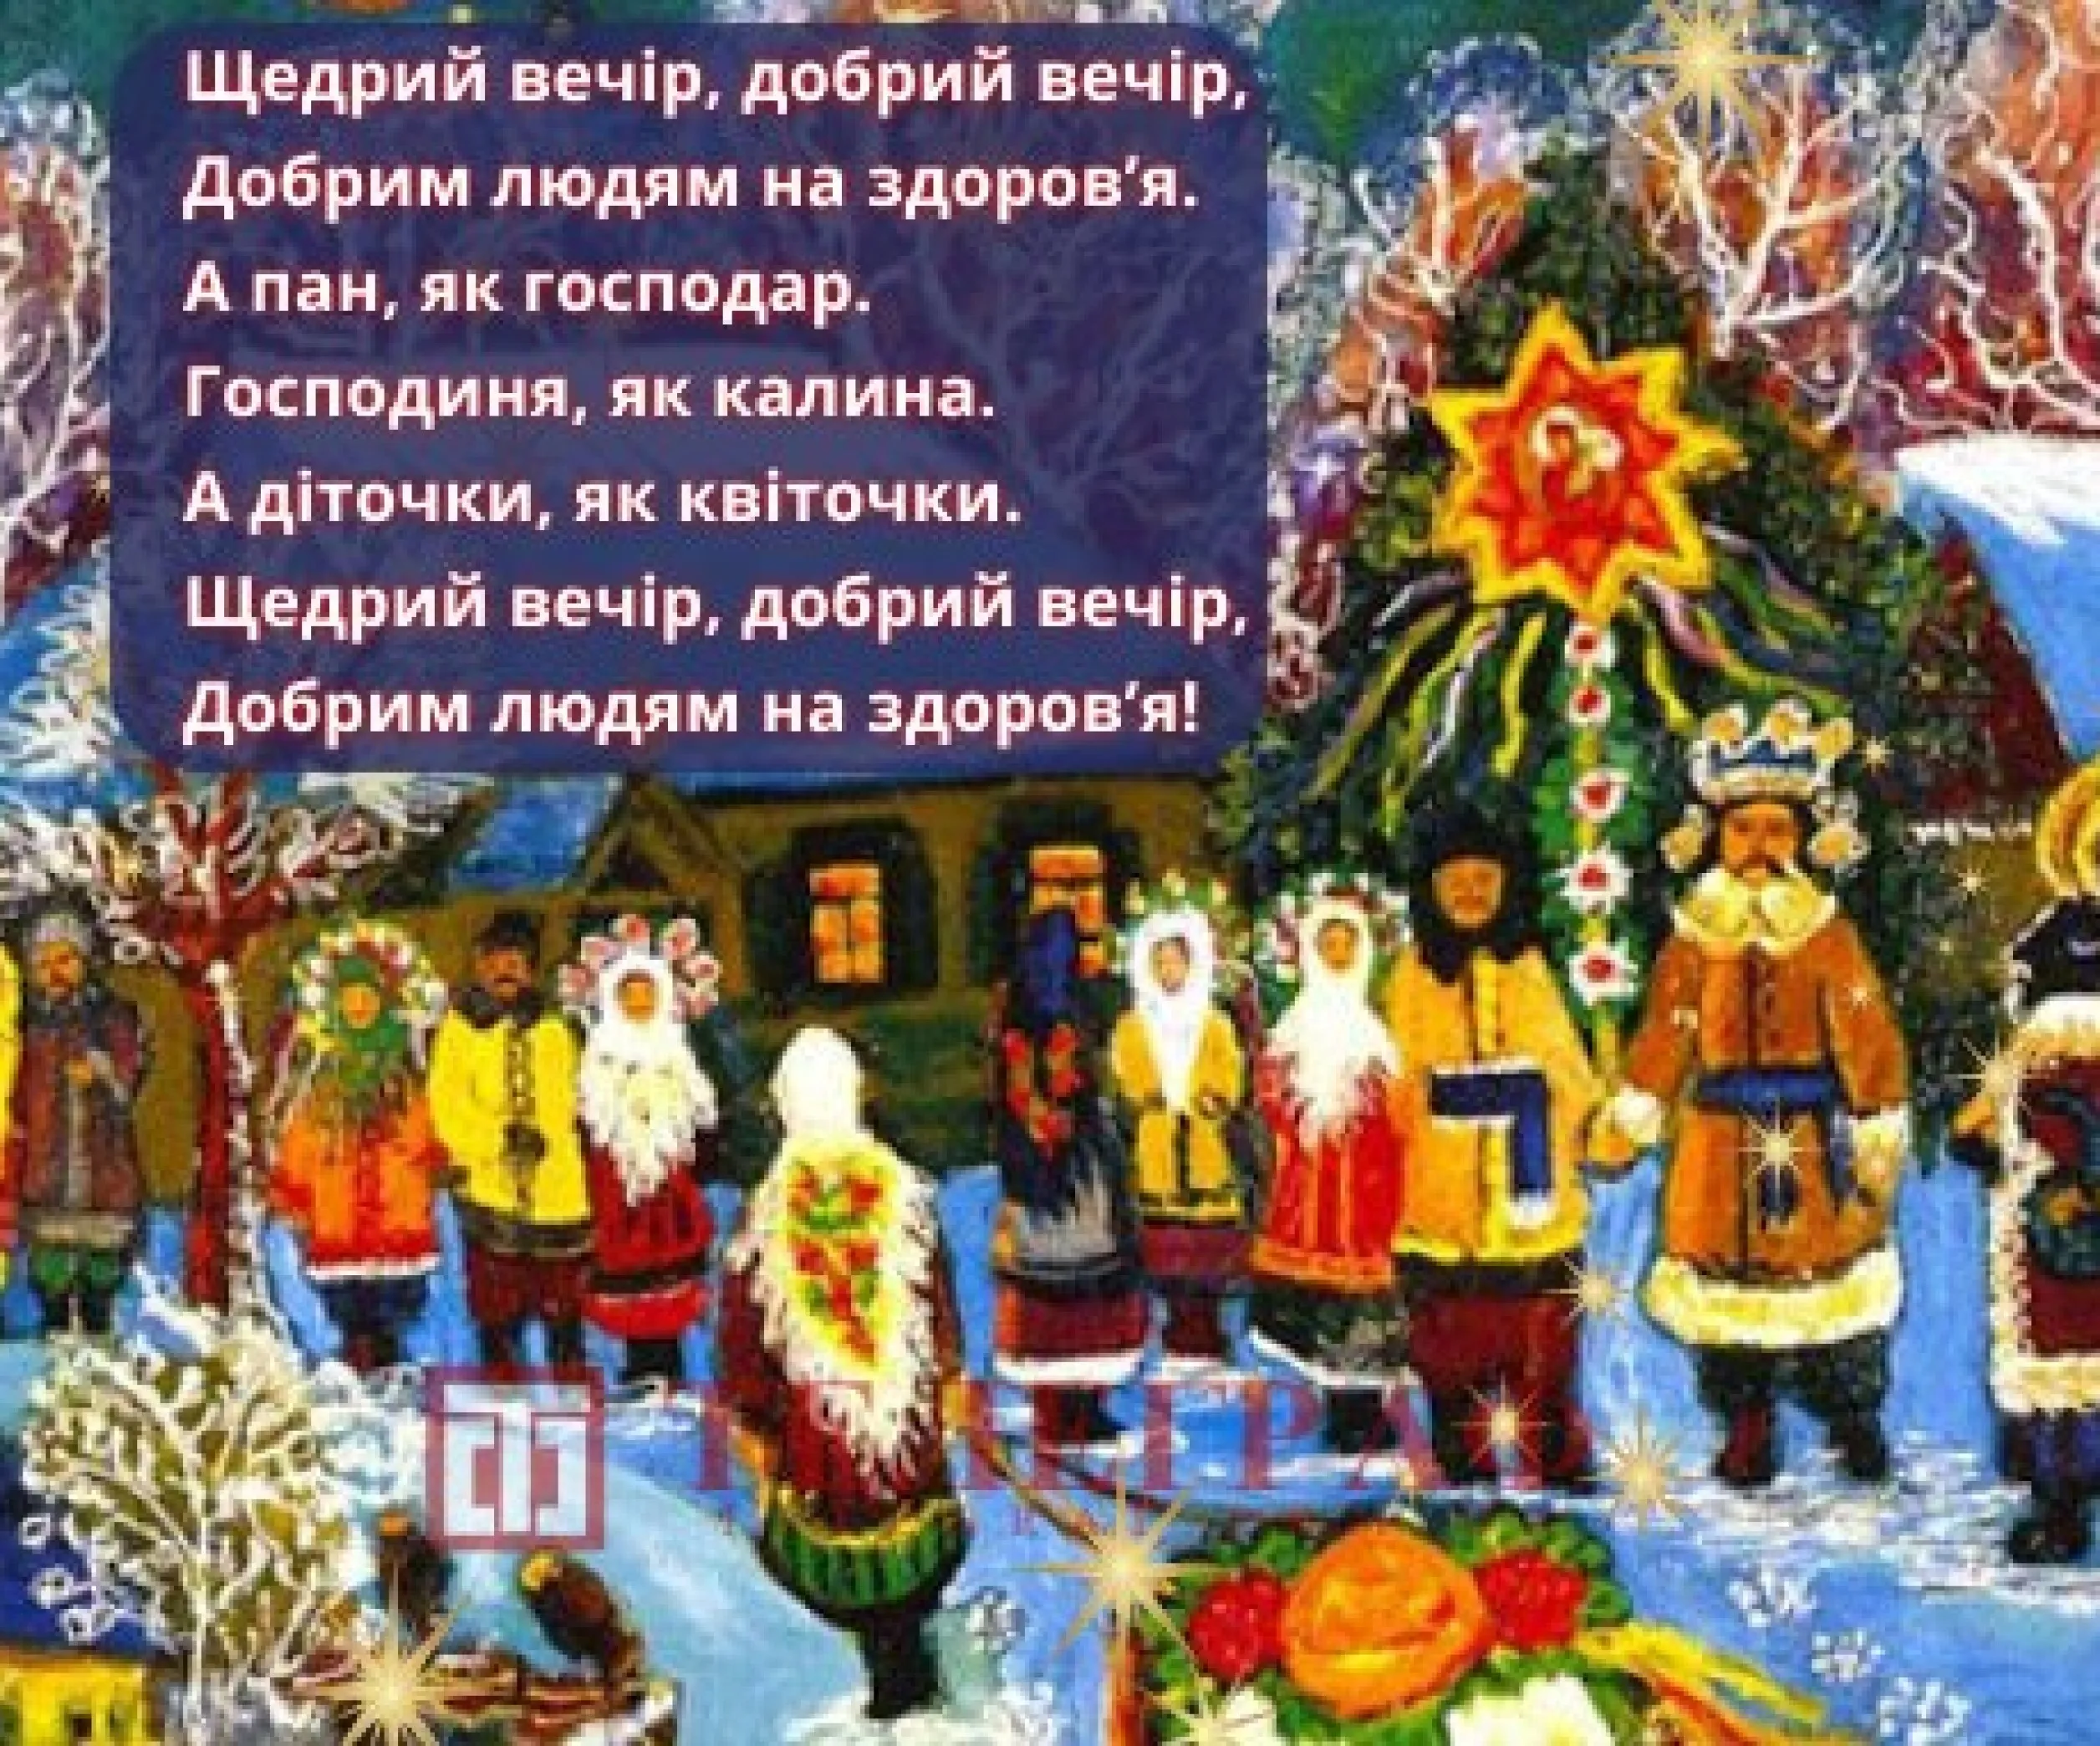 Вечером на украинском языке. Щедрый вечер. Щедрый вечер открытки. Щедрый вечер для детей. Щедрый вечер на украинском языке.